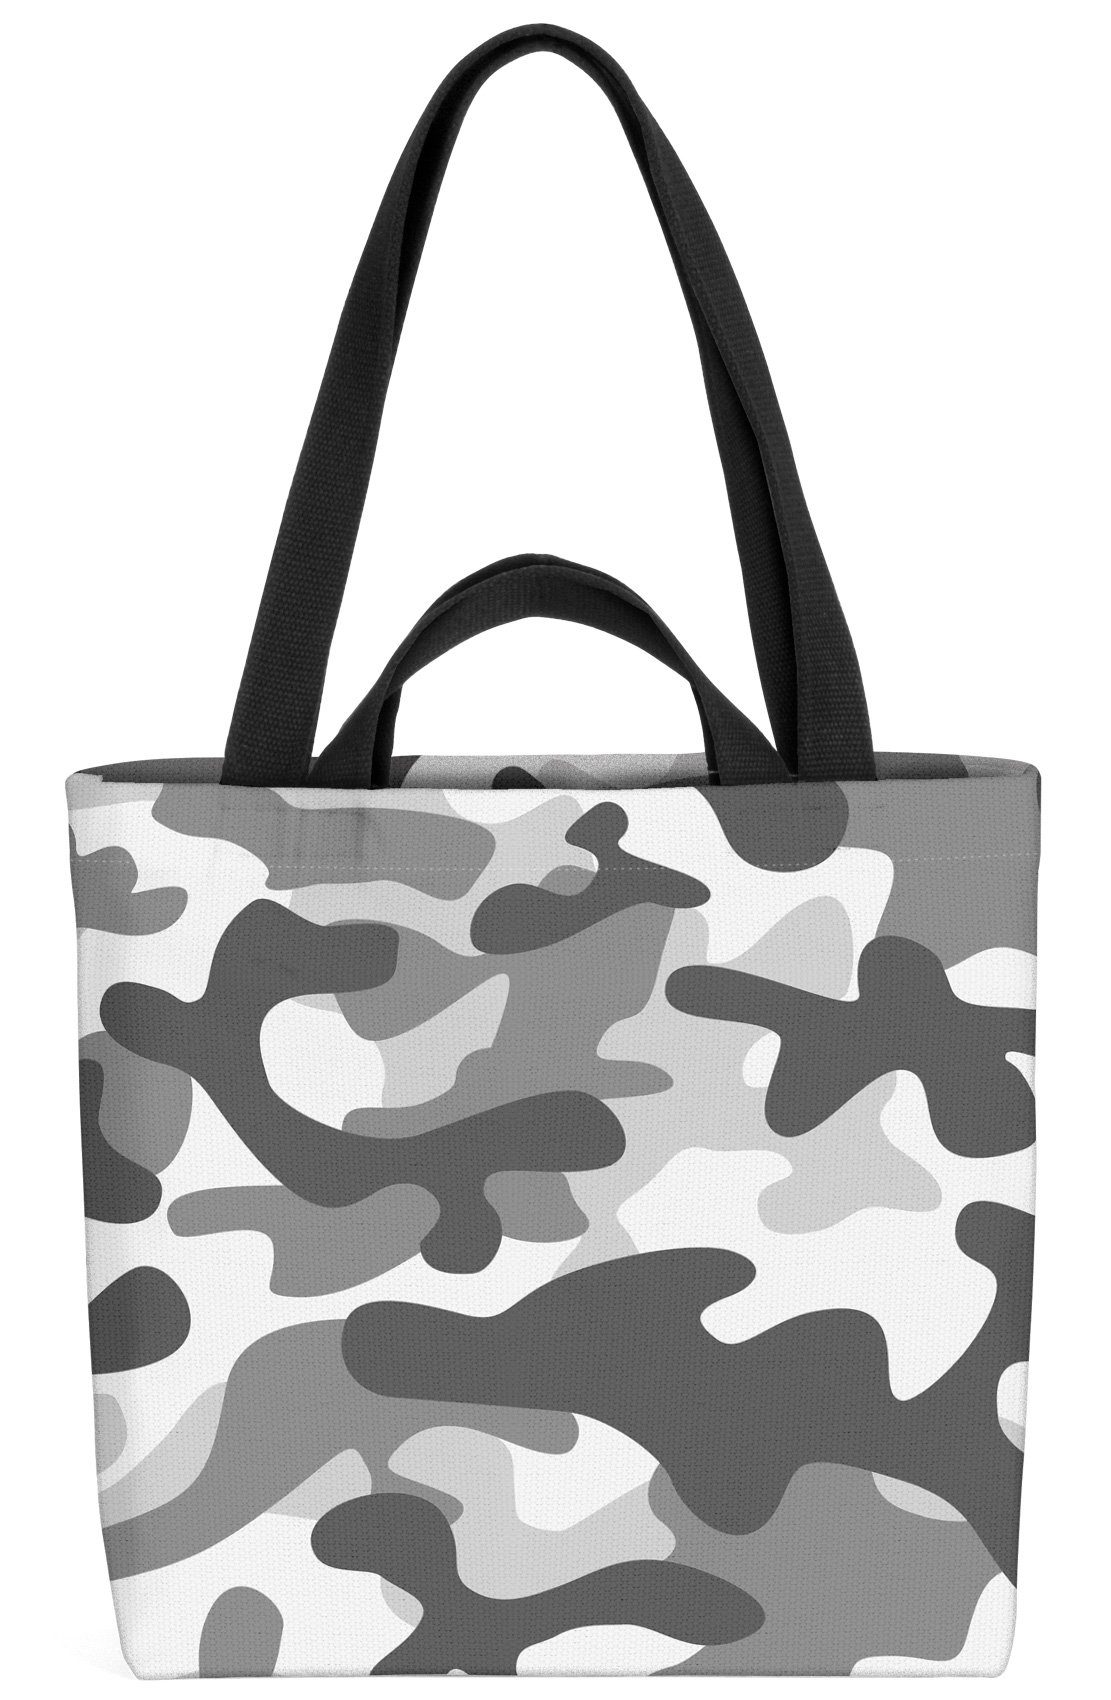 Militär Henkeltasche Tarnfarben Grau VOID Camouflage-Muster Muster Kampf (1-tlg), Tarn-Kleidung